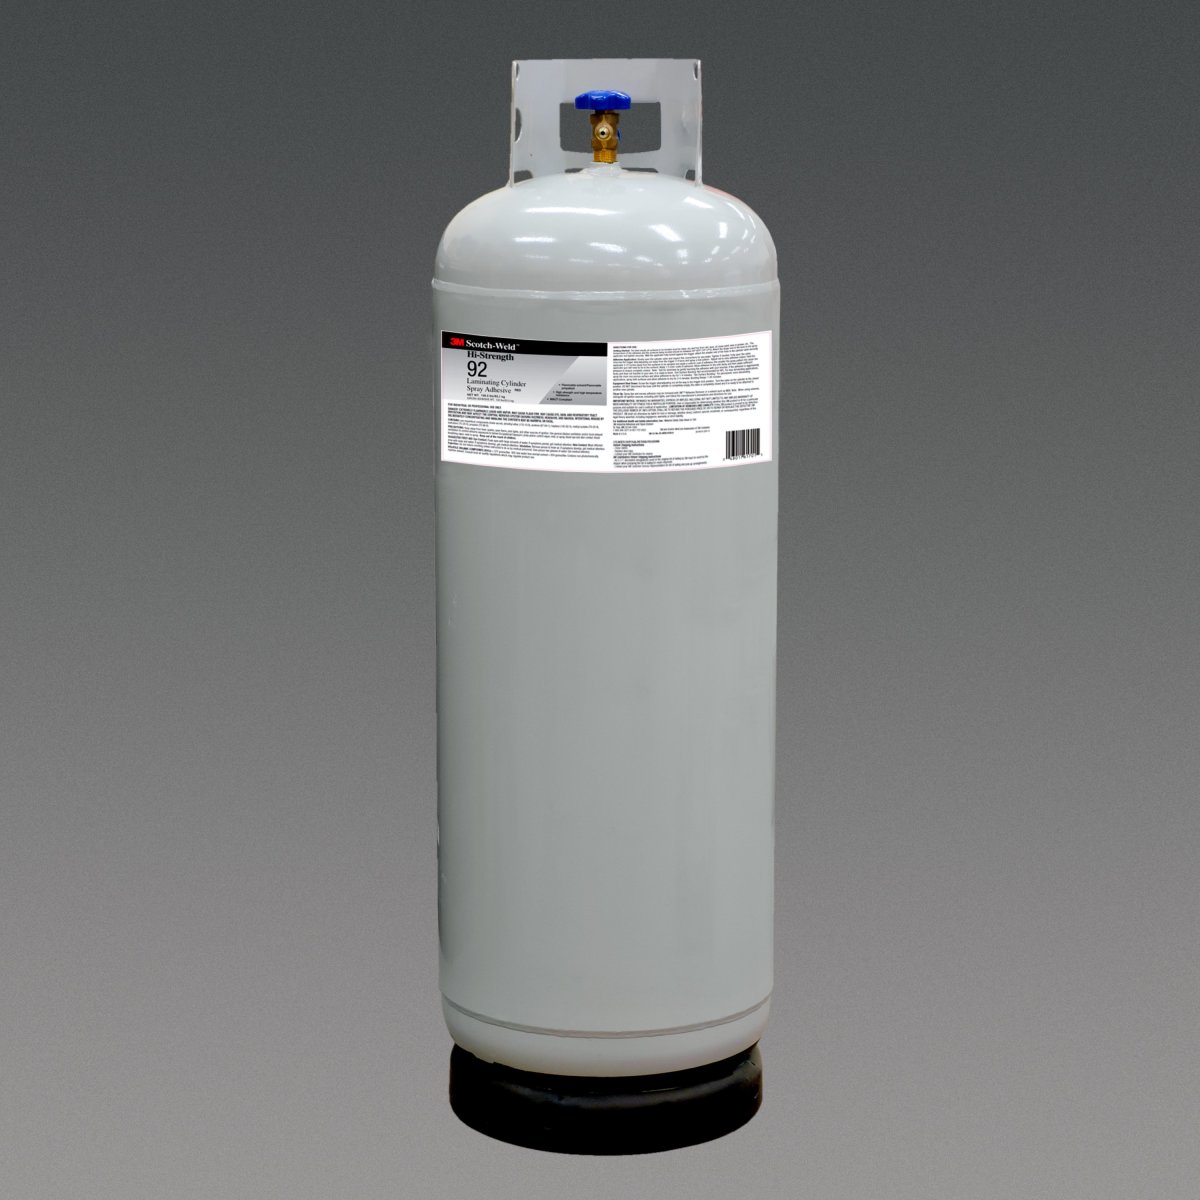 Airgas - 3MB021200-41530 - 3M™ Scotch-Weld™ DP420 Amber (Part A